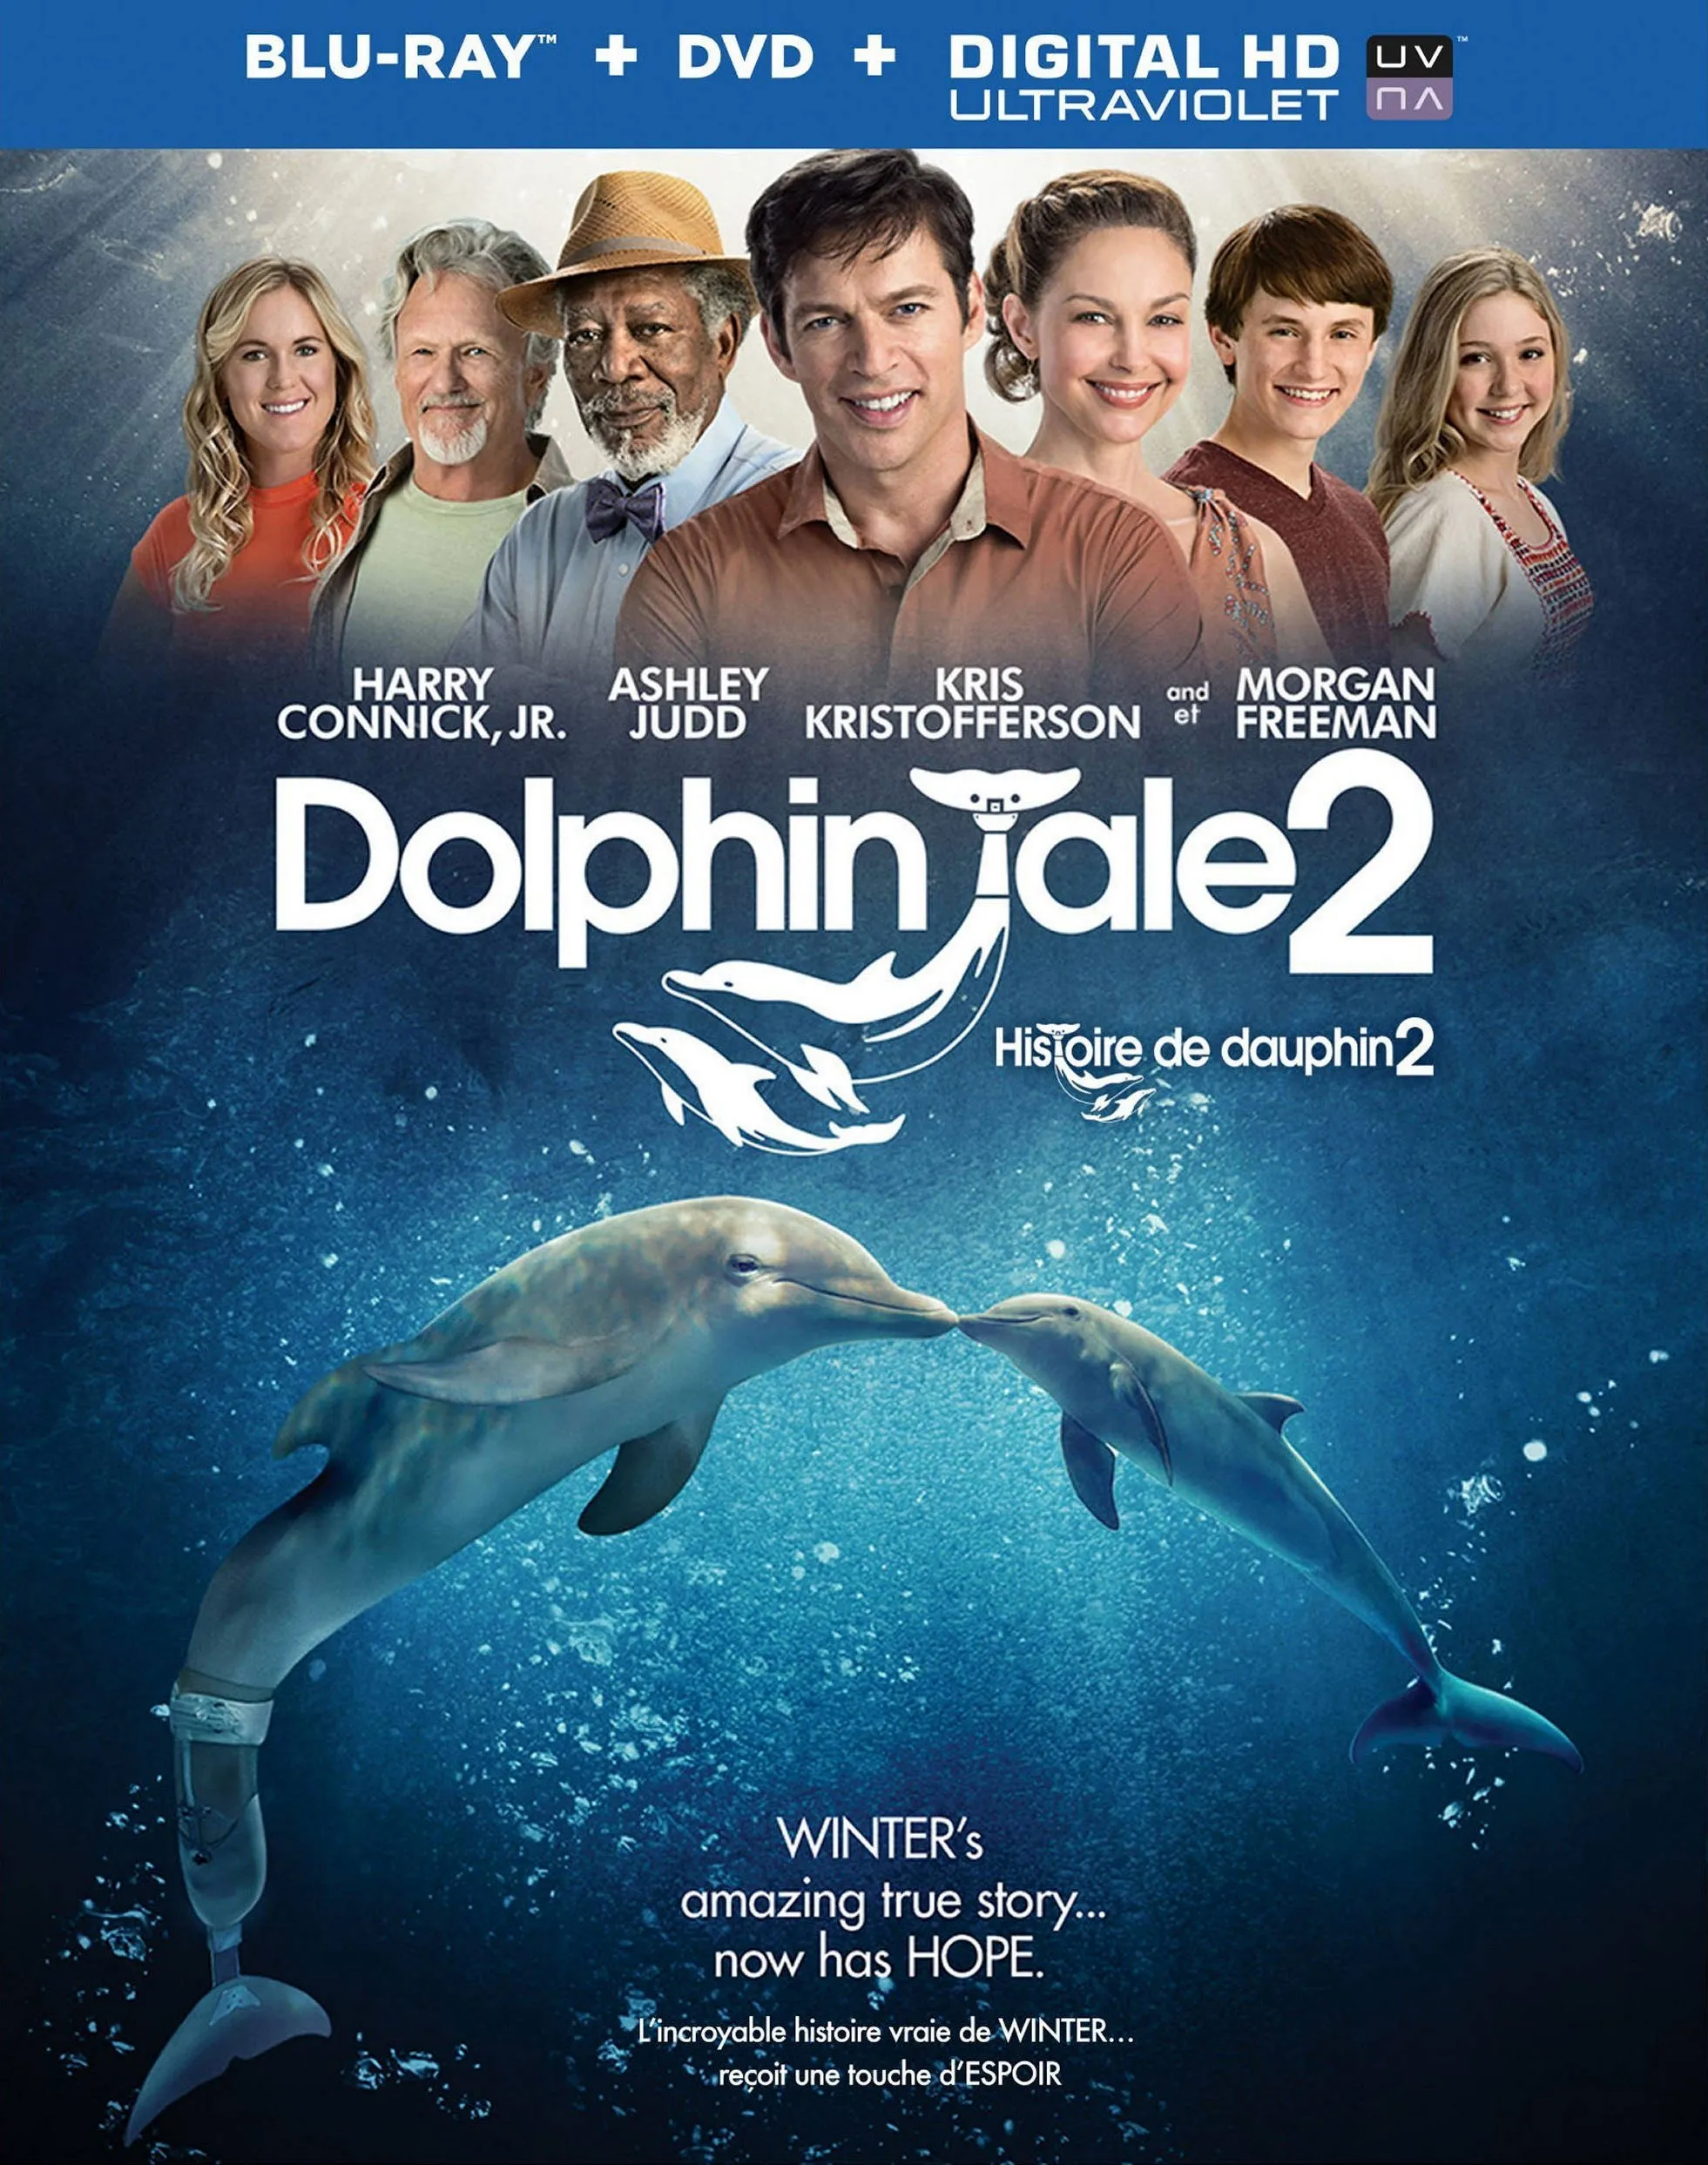 Дельфин 2 группа. История дельфина. История дельфина 2.